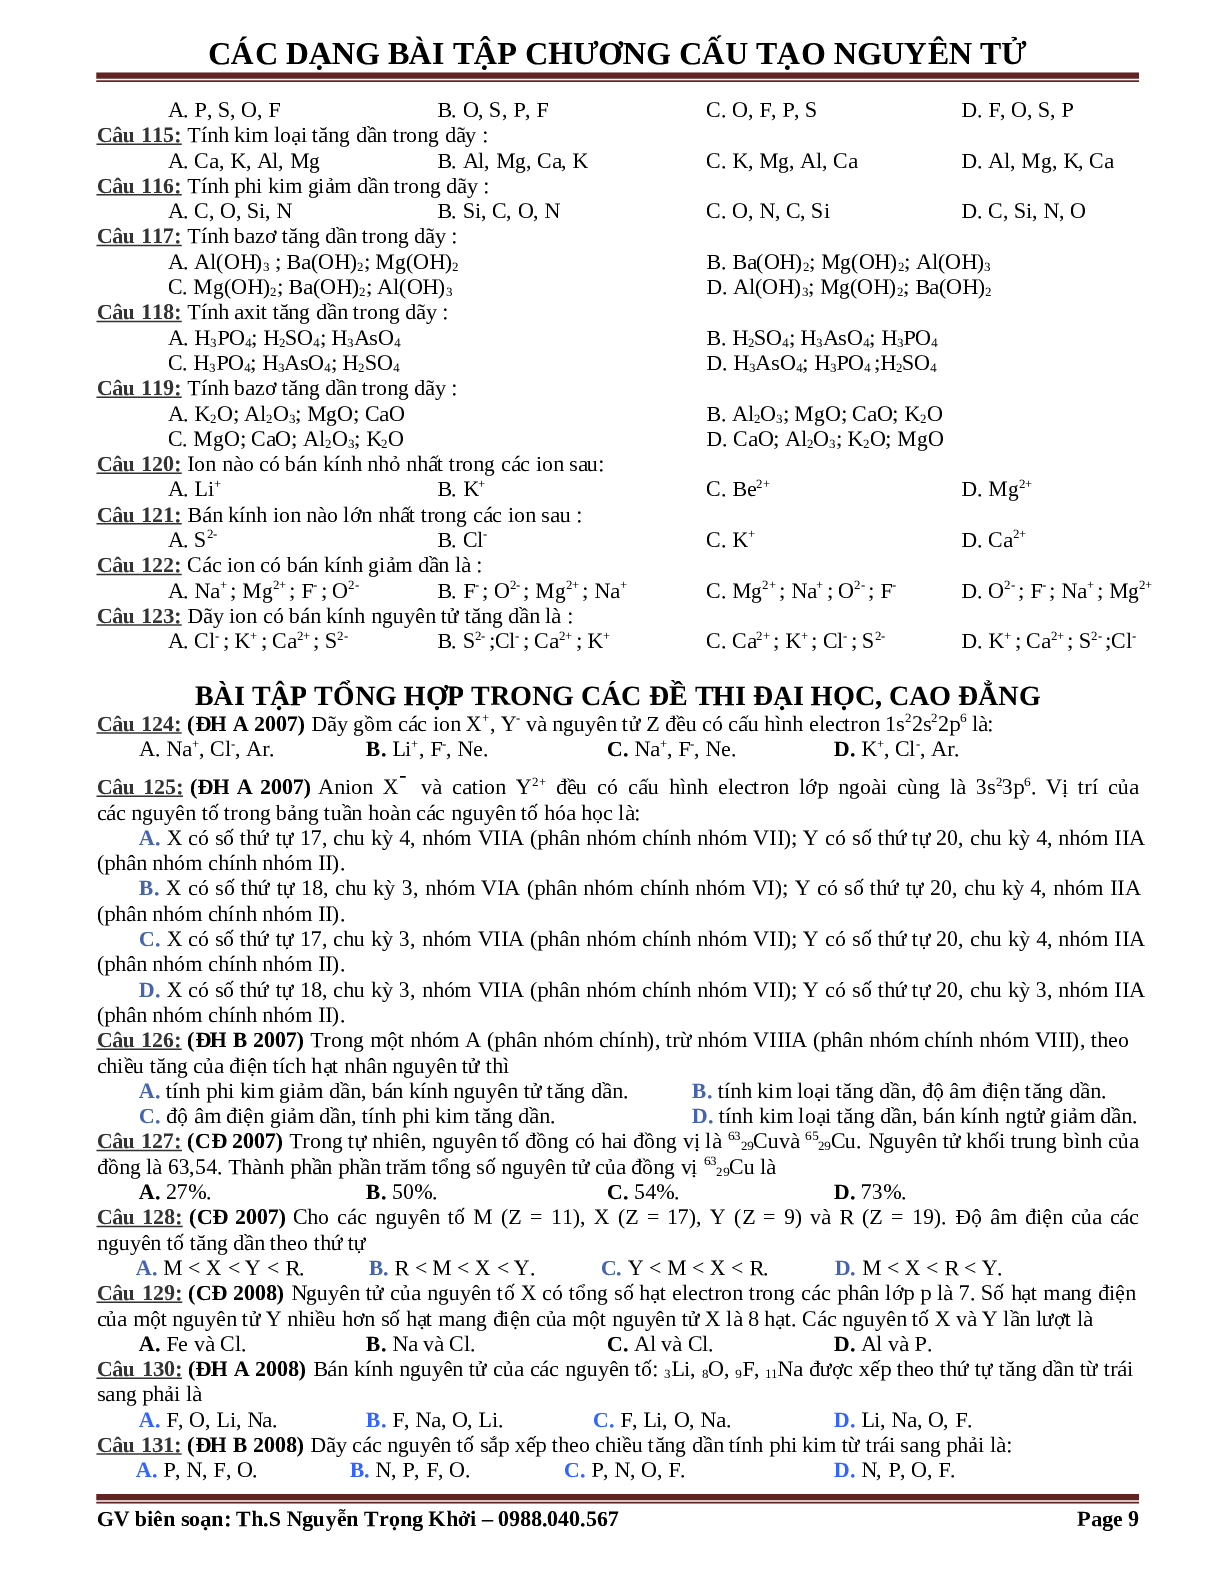 Bài tập về cấu tạo nguyên tử cơ bản, nâng cao (trang 9)